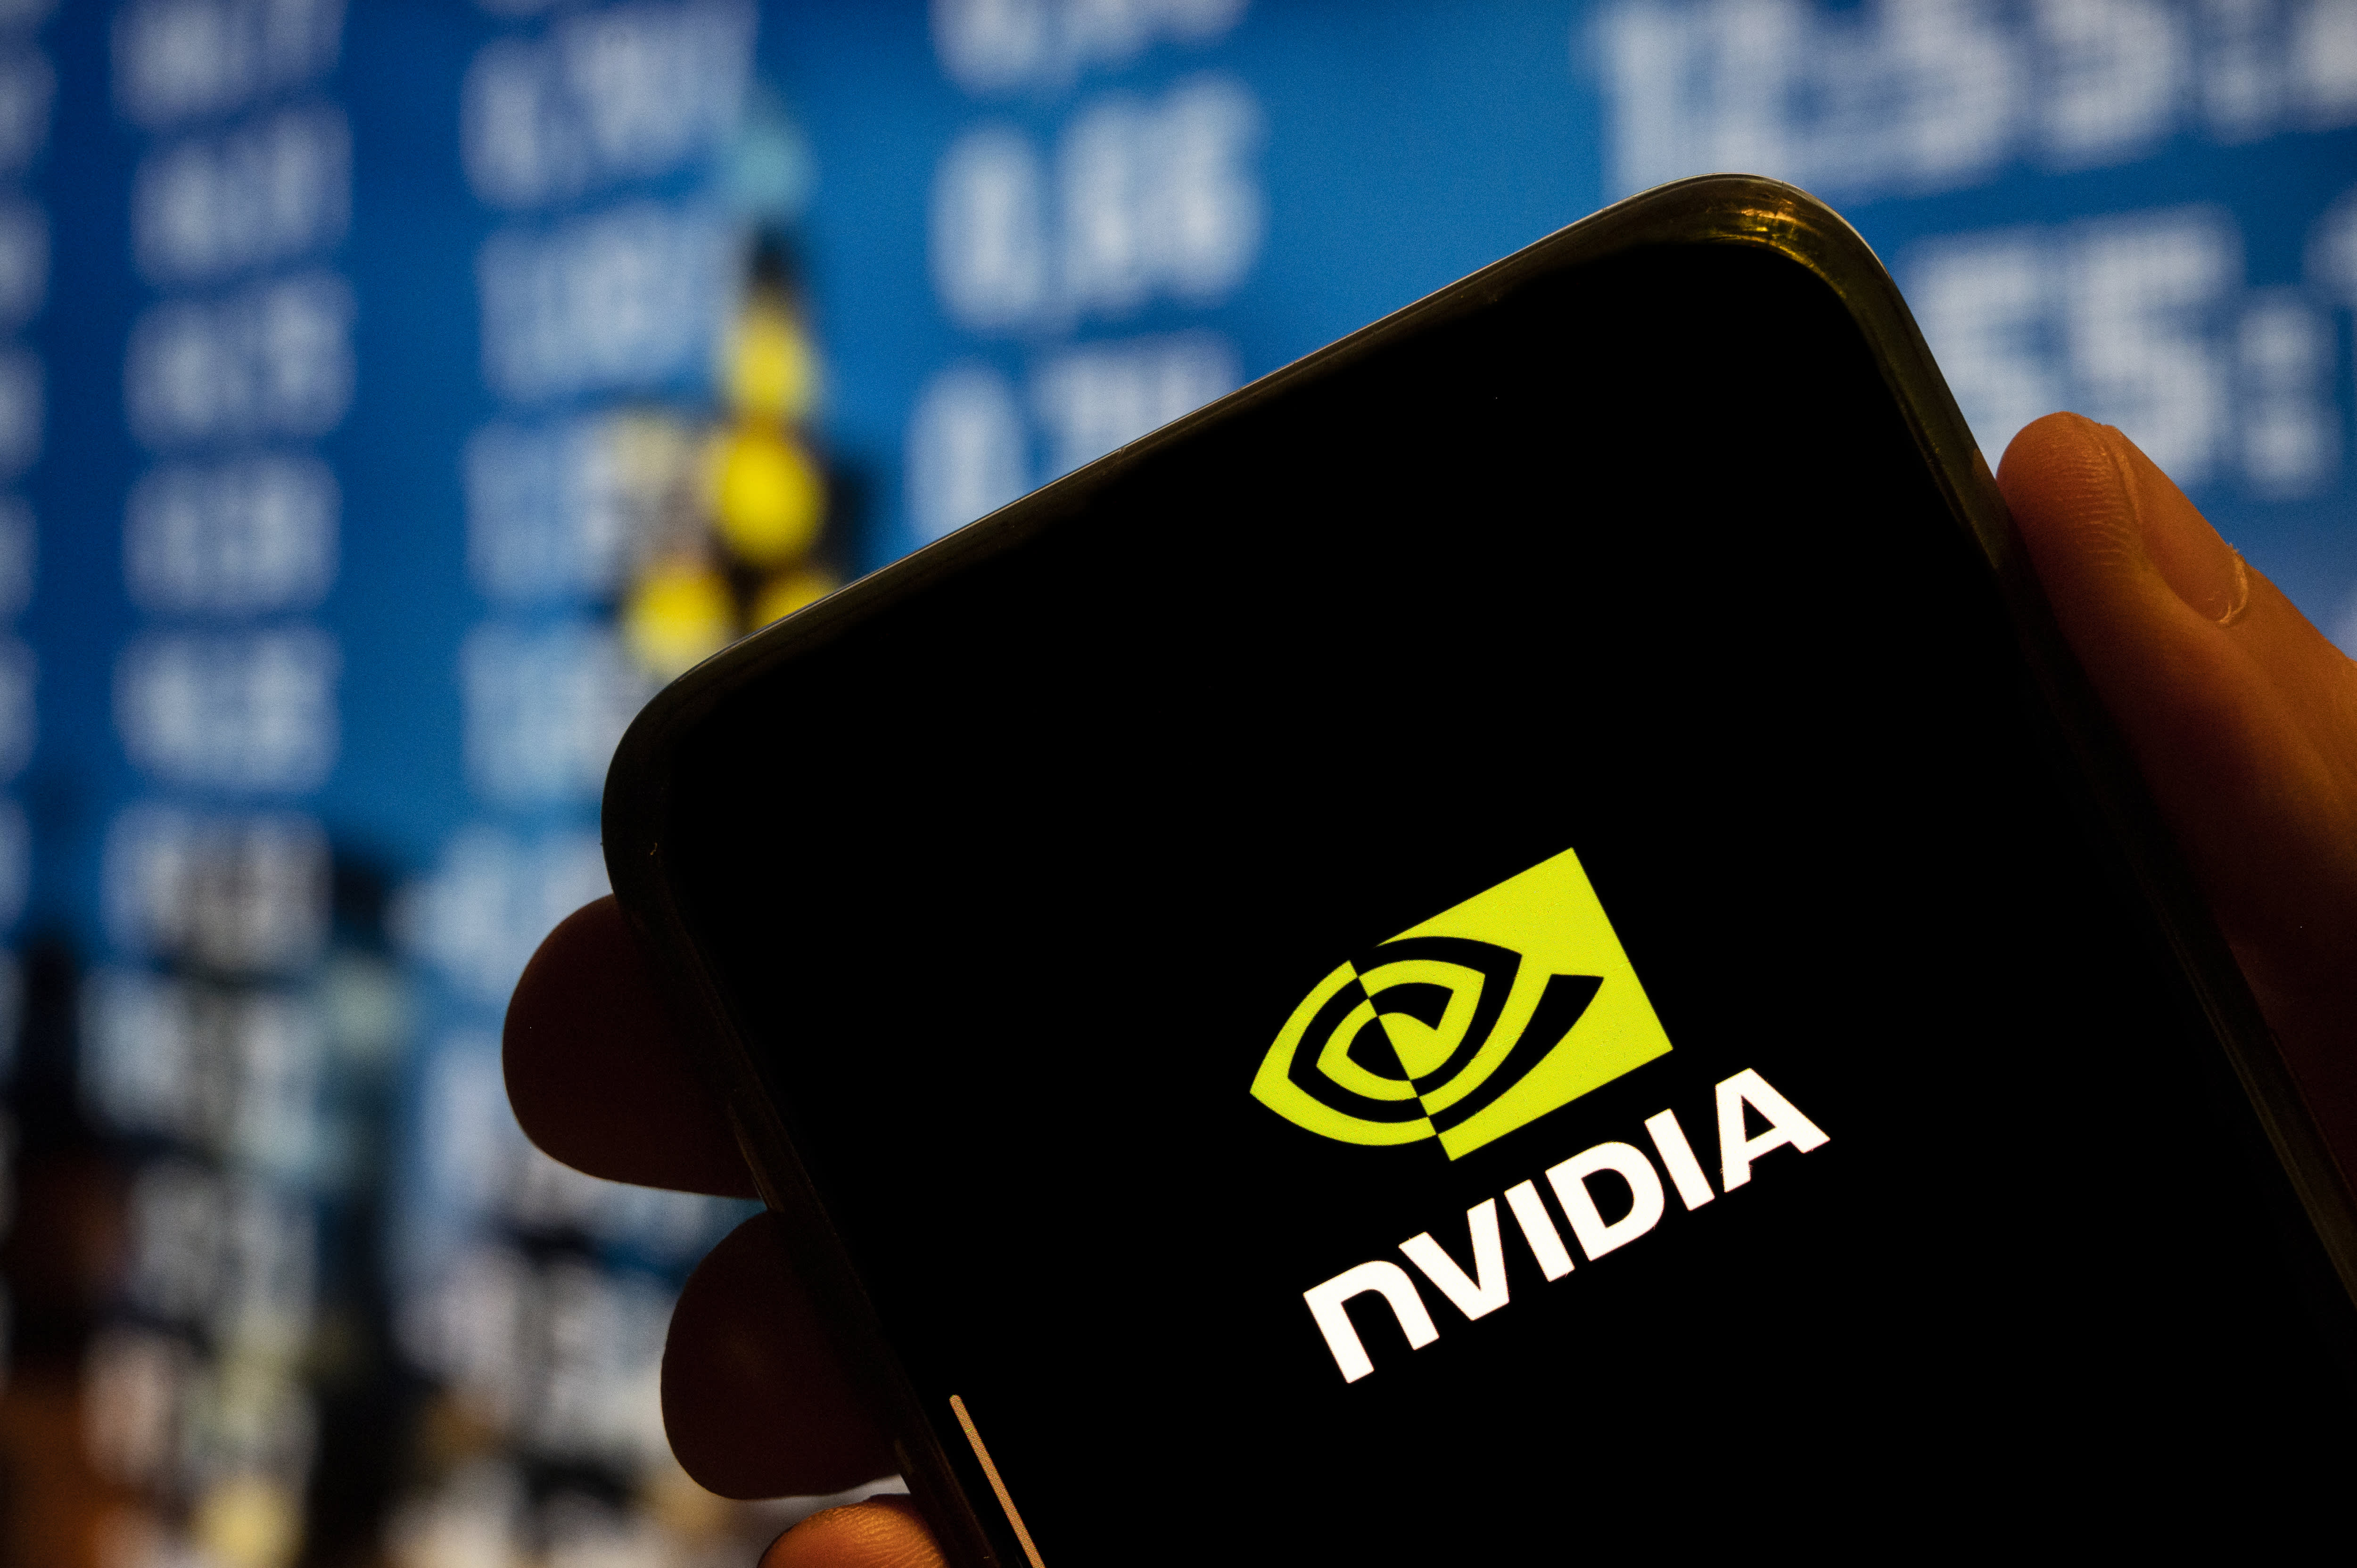 Daiwa downgrades Nvidia, says valuations still too high given weak economy